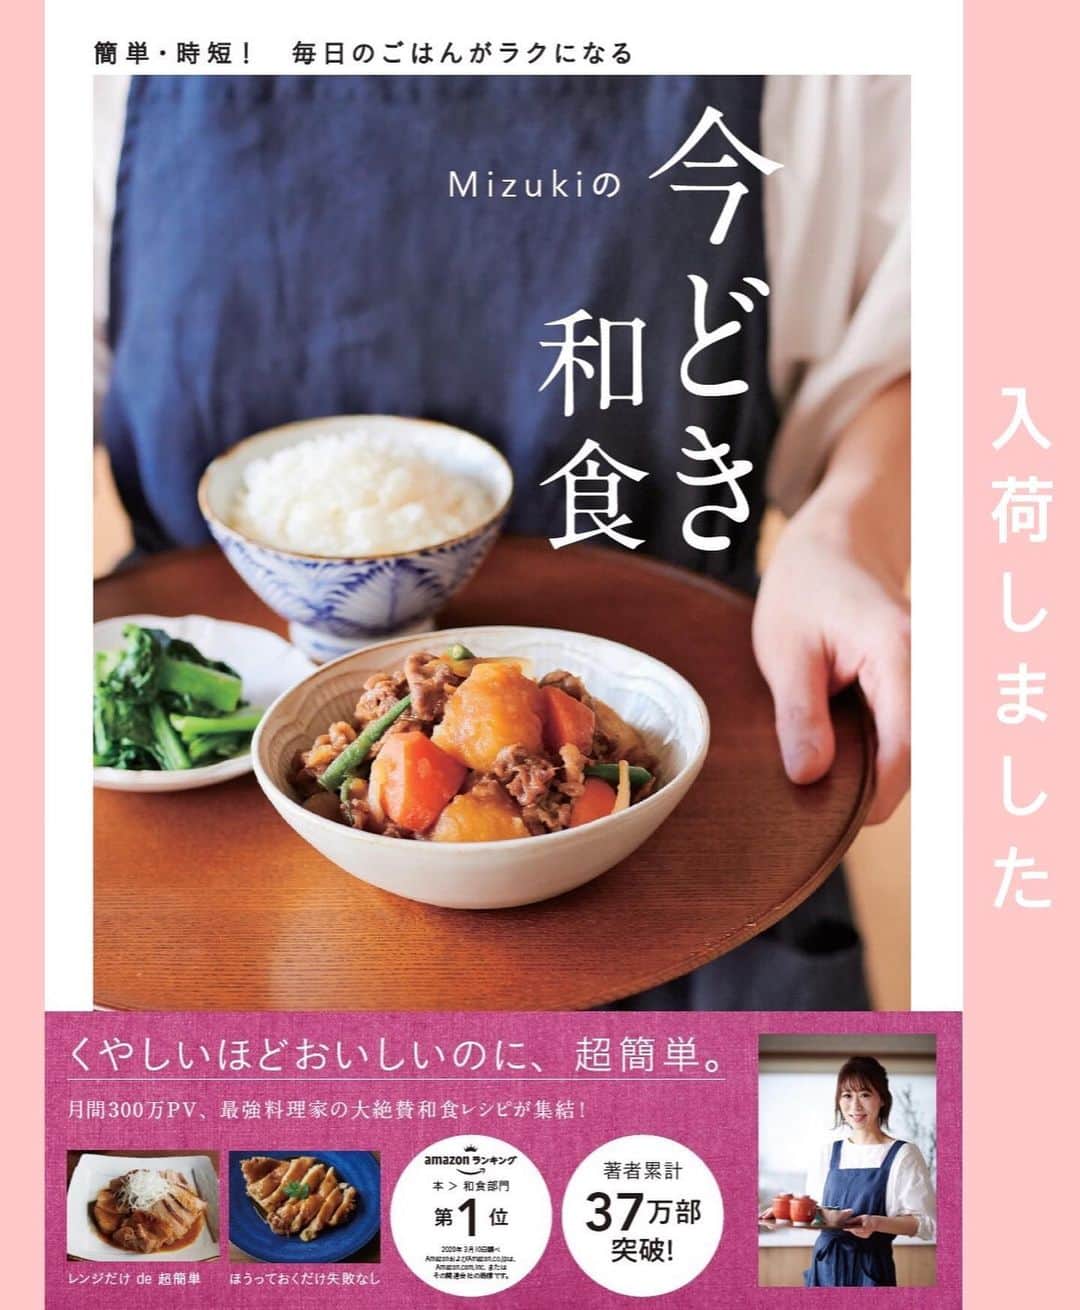 Mizuki【料理ブロガー・簡単レシピ】さんのインスタグラム写真 - (Mizuki【料理ブロガー・簡単レシピ】Instagram)「・﻿ 【レシピ】ーーーーーーーーーーーーーーー﻿ ♡コスパ抜群！ペパマヨチキンナゲット♡﻿ ーーーーーーーーーーーーーーーーーーーー﻿ ﻿ ﻿ ﻿ おはようございます(*^^*)﻿ ﻿ 今日はお手軽なひき肉で作る﻿ チキンナゲットのご紹介です♩﻿ 味付けはペパマヨでコクうま♡﻿ 一気に混ぜて揚げ焼きするだけの﻿ 超簡単レシピです(*´艸`)﻿ ﻿ しっかりおかずにもなり﻿ お弁当やおやつにも最適♩﻿ コスパ抜群なので﻿ よかったらお試し下さいね(*^^*)﻿ ﻿ ﻿ ﻿ ーーーーーーーーーーーーーーーーーーーー﻿ 【2〜3人分】﻿ ●鶏ひき肉...250g﻿ ●卵...1個﻿ ●パン粉...大3﻿ ●片栗粉・薄力粉・マヨネーズ...各大1﻿ ●塩・粗挽き黒こしょう...各小1/3﻿ サラダ油...適量﻿ ﻿ 1.ボウルに●を入れてよく混ぜる。﻿ 2.フライパンに5mmのサラダ油を入れて中火で熱し、1をスプーンで(2〜3cm大に)すくって落とし入れ、両面色よく揚げ焼きにする。﻿ ーーーーーーーーーーーーーーーーーーーー﻿ ﻿ ﻿ ﻿ 《ポイント》﻿ ♦︎好みでマヨネーズやケチャップをつけたり、黒こしょうを更に振って食べても美味しいです♩﻿ ﻿ ﻿ ﻿ ﻿ ﻿ ﻿ ﻿ 🔻入荷しました🔻﻿ ストーリーにリンク貼っています🙇‍♀️﻿ ＿＿＿＿＿＿＿＿＿＿＿＿＿＿＿＿＿＿＿﻿ 📕\ \ 新刊発売中 / /📕﻿ 簡単・時短！ 毎日のごはんがラクになる﻿ ✨🦋 【 #Mizukiの今どき和食 】🦋✨﻿ ＿＿＿＿＿＿＿＿＿＿＿＿＿＿＿＿＿＿＿﻿ ﻿ なるべく少ない材料で﻿ 手間も時間も省きながら﻿ 簡単にできるおいしい和食レシピ♩﻿ 簡単に失敗なくマスターできる一冊で﻿ もっと気軽に、カジュアルに﻿ 和食を楽しんで下さいね(*^^*)﻿ ﻿ ﻿ ーーー ⭐️PART.1 メインおかず ⭐️ーーー﻿ 素材別にレシピをご紹介しています♩﻿ 和食の定番から新定番まで﻿ どれも押さえておきたいメニューばかり。﻿ 肉じゃがはフライパンで！焼き豚はレンジで！﻿ ぶり大根は切り身を使って手軽に作ります♩﻿ ﻿ ーーー ☘️PART.2 サブおかず ☘️ーーー﻿ 年中手に入るお手頃野菜と﻿ 乾物や大豆、こんにゃくなどを使った﻿ 副菜レシピをたっぷり掲載！！﻿ 普段SNSではメインおかずばかりなので﻿ 本では副菜にも力を入れています(*^^*)﻿ ﻿ ーーー 🌸PART.3 ごはんと汁物 🌸ーーー﻿ ささっと作れる丼と麺、﻿ みんなで食べたいいなり寿司や﻿ 手巻きごはんもご紹介！﻿ 複数の炊き込みごはんと﻿ 味噌汁&和風スープも盛りだくさん！﻿ ﻿ ﻿ 各レシピのポイントは﻿ 【写真付きで丁寧に解説】﻿ 副菜レシピもたっぷりなので﻿ 【メインページに副菜メモもつけました】﻿ ＊このメインにはこの副菜が合いますよ〜﻿ という献立の提案です(*^^*)﻿ 【その他コラムも充実】﻿ 全127品中ほぼ全て﻿ 【本だけのレシピです！】﻿ ＿＿＿＿＿＿＿＿＿＿＿＿＿＿＿＿＿＿＿﻿ ﻿ ﻿ ﻿ ﻿ ﻿ ＿＿＿＿＿＿＿＿＿＿＿＿＿＿＿＿＿﻿ 🎀発売中🎀﻿ 【#ホットケーキミックスのお菓子 】﻿ ﻿ 一冊まるっとホケミスイーツ♩﻿ 普段のおやつから﻿ 特別な日にも使えるレシピを﻿ この一冊に詰め込みました(*^^*)﻿ ホットケーキミックスを使えば﻿ 簡単に本格的なお菓子が作れますよ♡﻿ ＿＿＿＿＿＿＿＿＿＿＿＿＿＿＿＿＿﻿ ﻿ ⭐️ストーリー、ハイライト、プロフ画面に﻿ 本のURLを貼らせていただいております♩﻿ →(@mizuki_31cafe )﻿ ﻿ ﻿ ﻿ ﻿ ﻿ #鶏ひき肉#ナゲット#チキンナゲット#コスパ#うちで過ごそう#おうち時間#Mizuki#簡単レシピ#時短レシピ#節約レシピ#料理#レシピ#フーディーテーブル#マカロニメイト#おうちごはん#おうちカフェ#デリスタグラマー#料理好きな人と繋がりたい#おうちごはん#lover#foodpic#follow#cooking#recipe#lin_stagrammer#stayhome#ペパマヨチキンナゲットm」5月28日 7時26分 - mizuki_31cafe